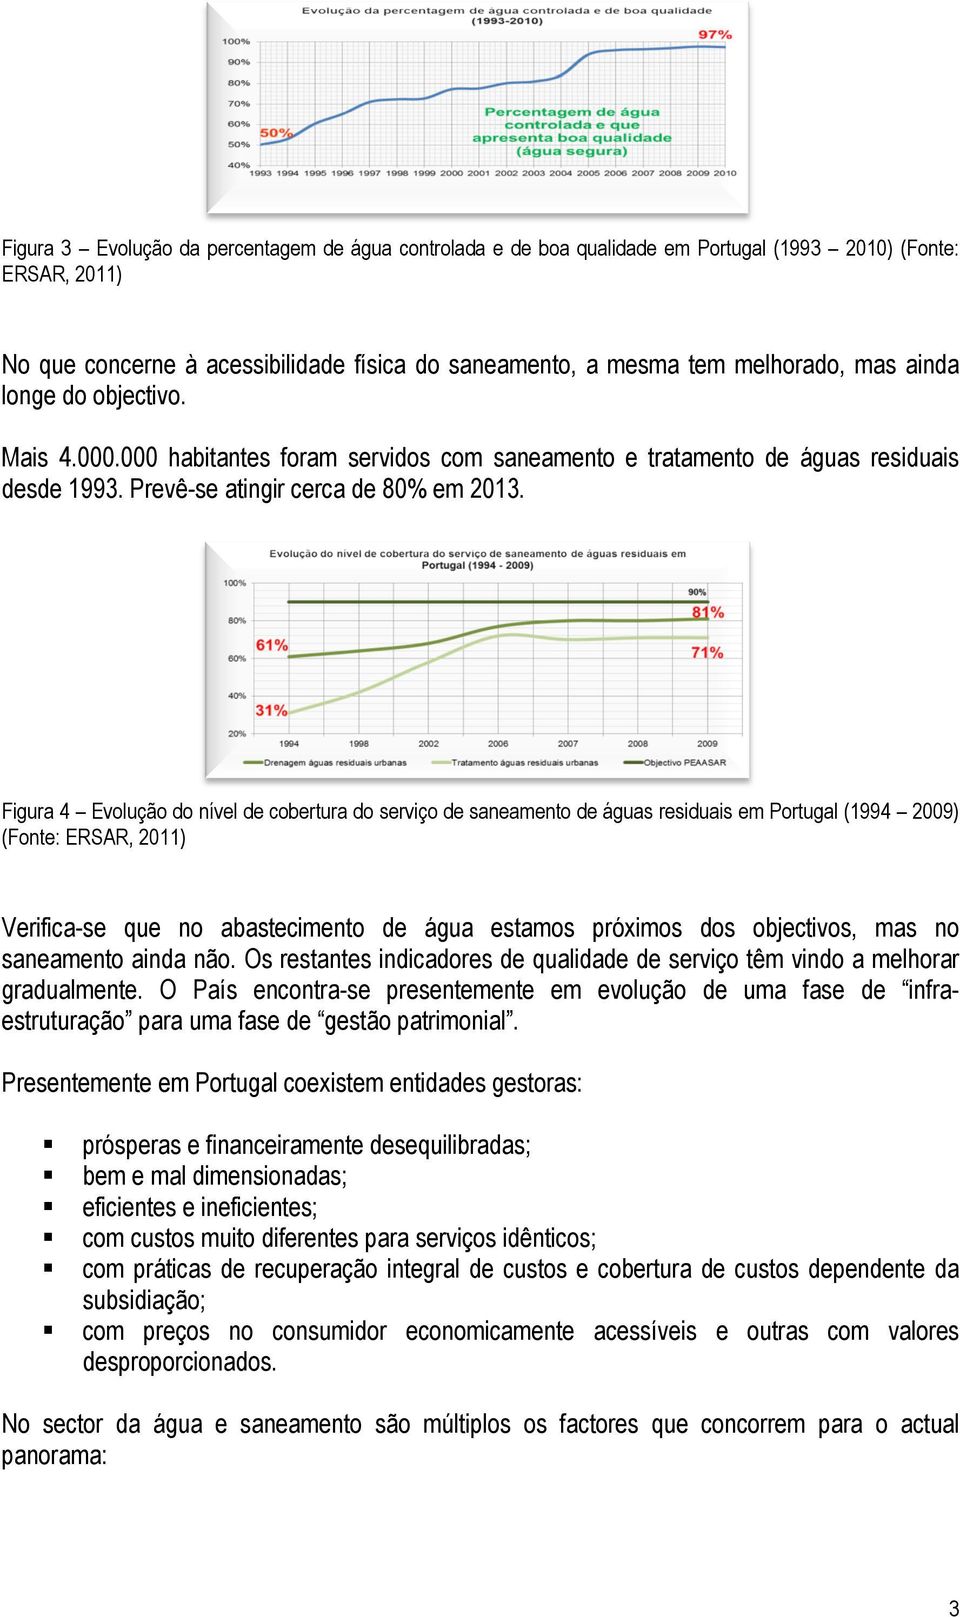 Figura 4 Evolução do nível de cobertura do serviço de saneamento de águas residuais em Portugal (1994 2009) (Fonte: ERSAR, 2011) Verifica-se que no abastecimento de água estamos próximos dos